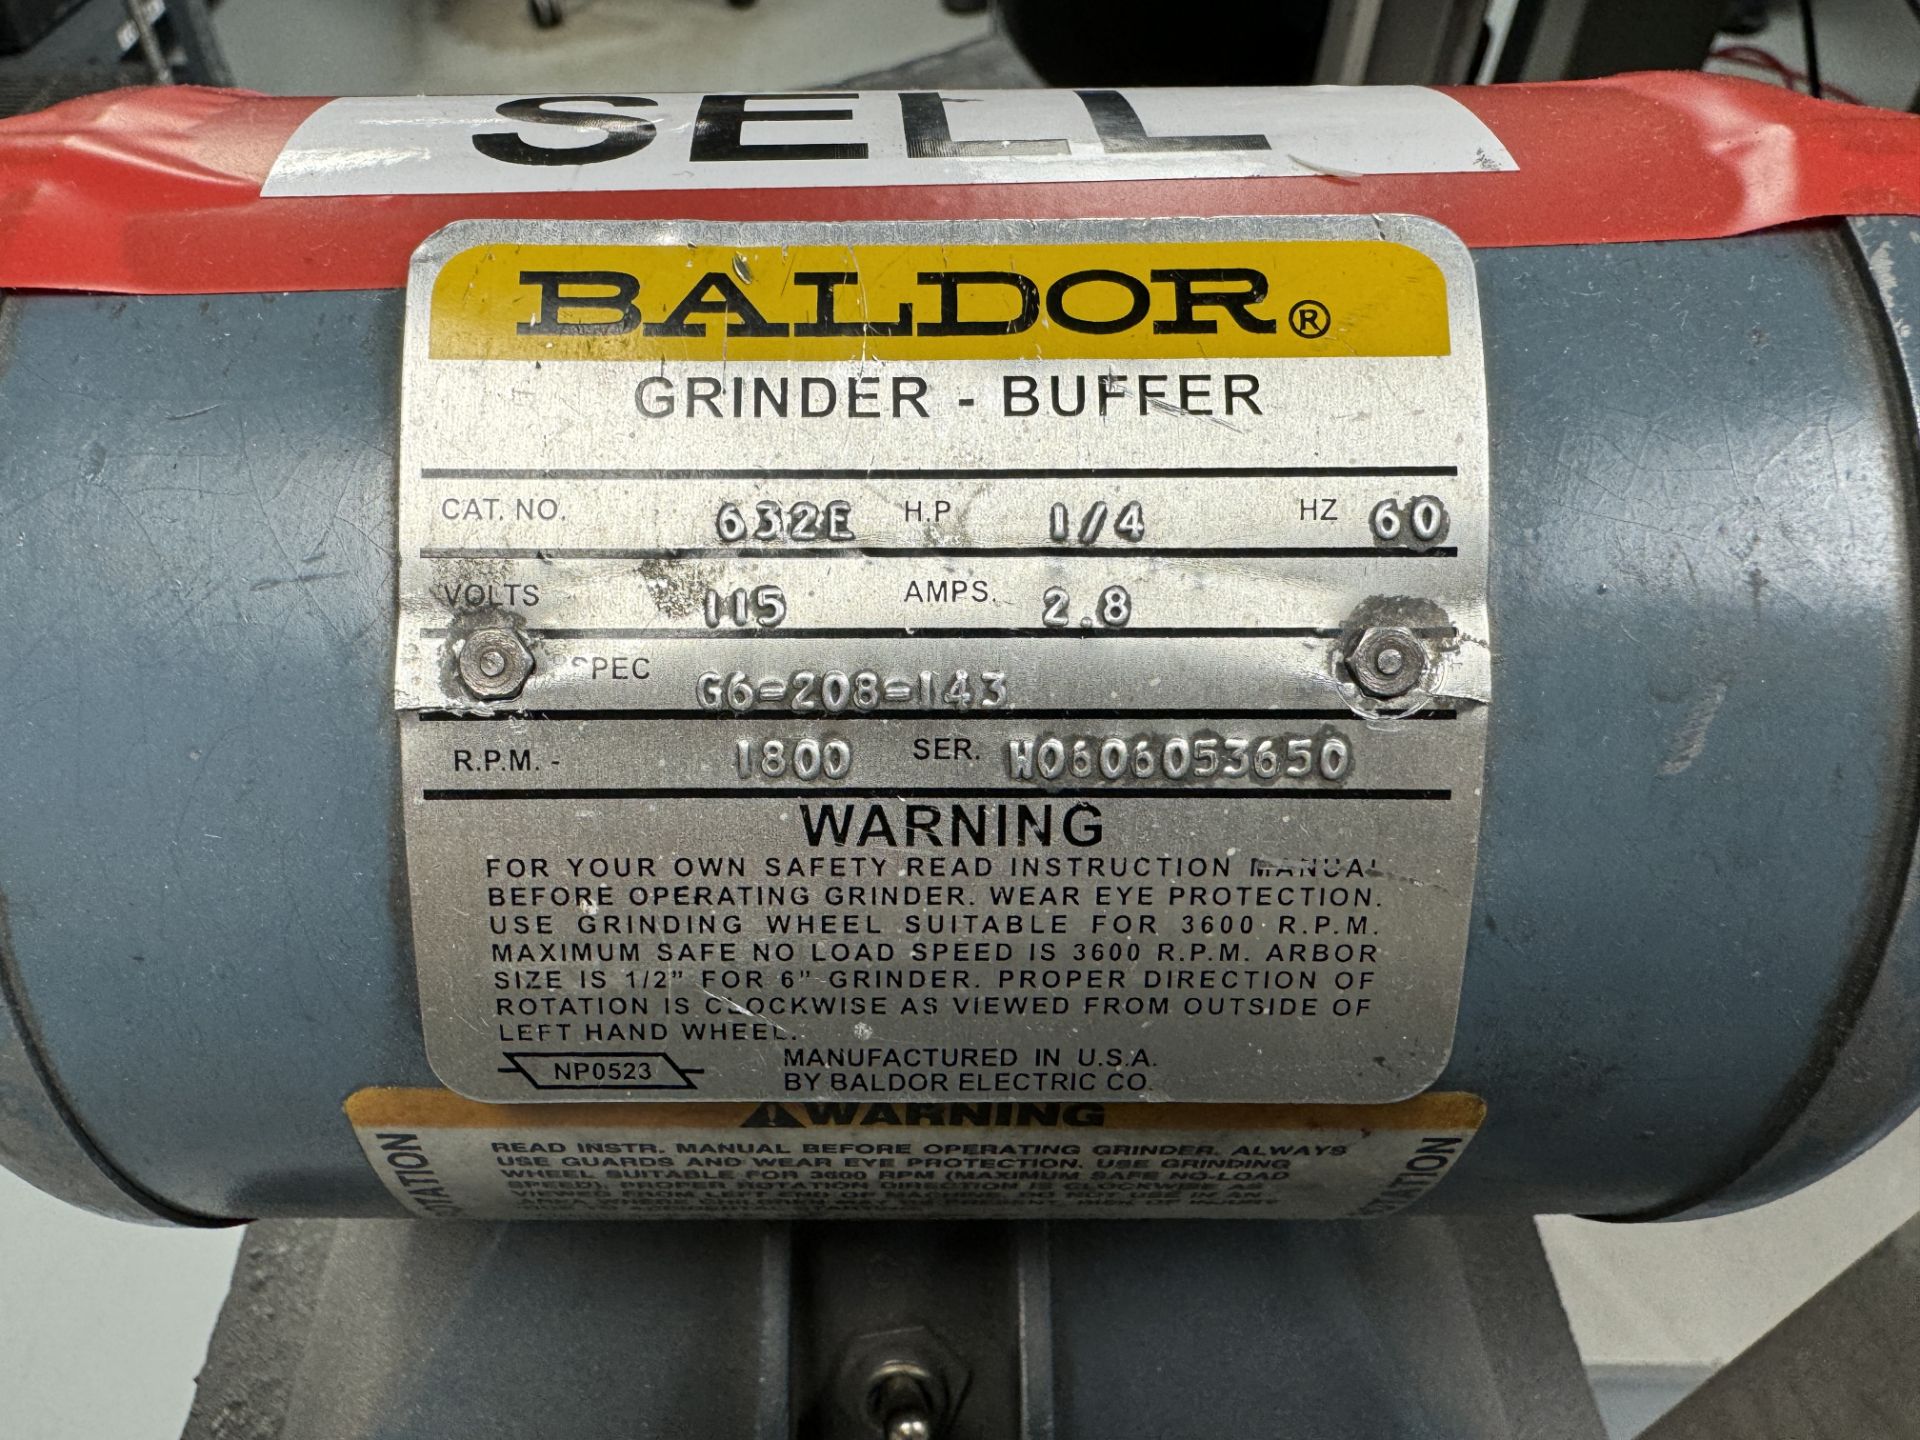 BALDOR DOUBLE PEDESTAL GRINDER/BUFFER; 1/4 HP; 115 V - Image 2 of 2